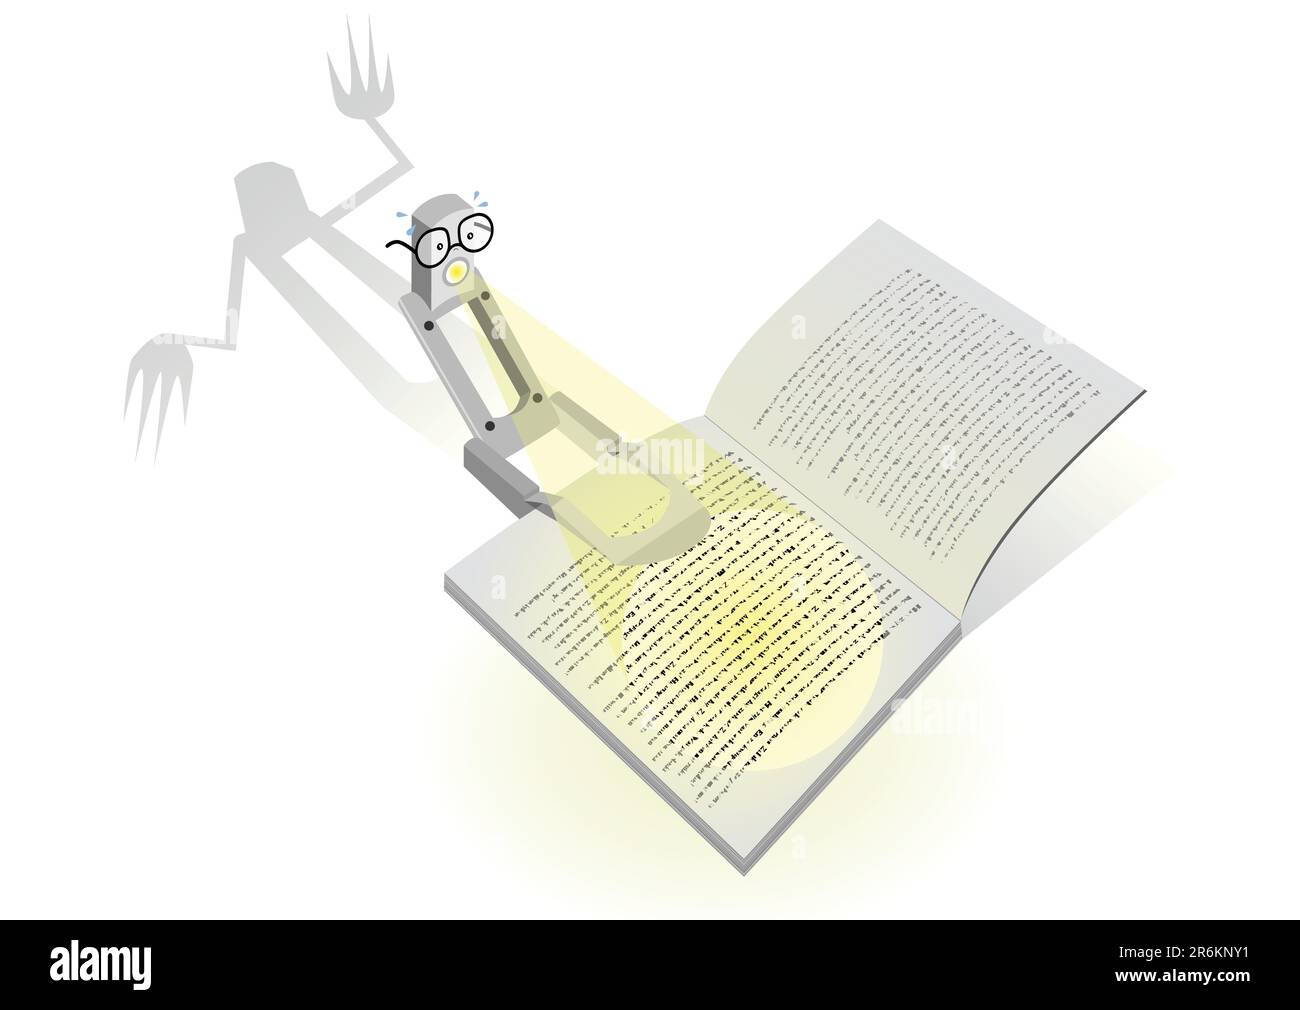 Illustrazione dei caratteri vettoriali di una lampada da lettura che legge un libro spaventoso. Tutti gli oggetti vettoriali e i dettagli sono isolati e raggruppati. Illustrazione Vettoriale